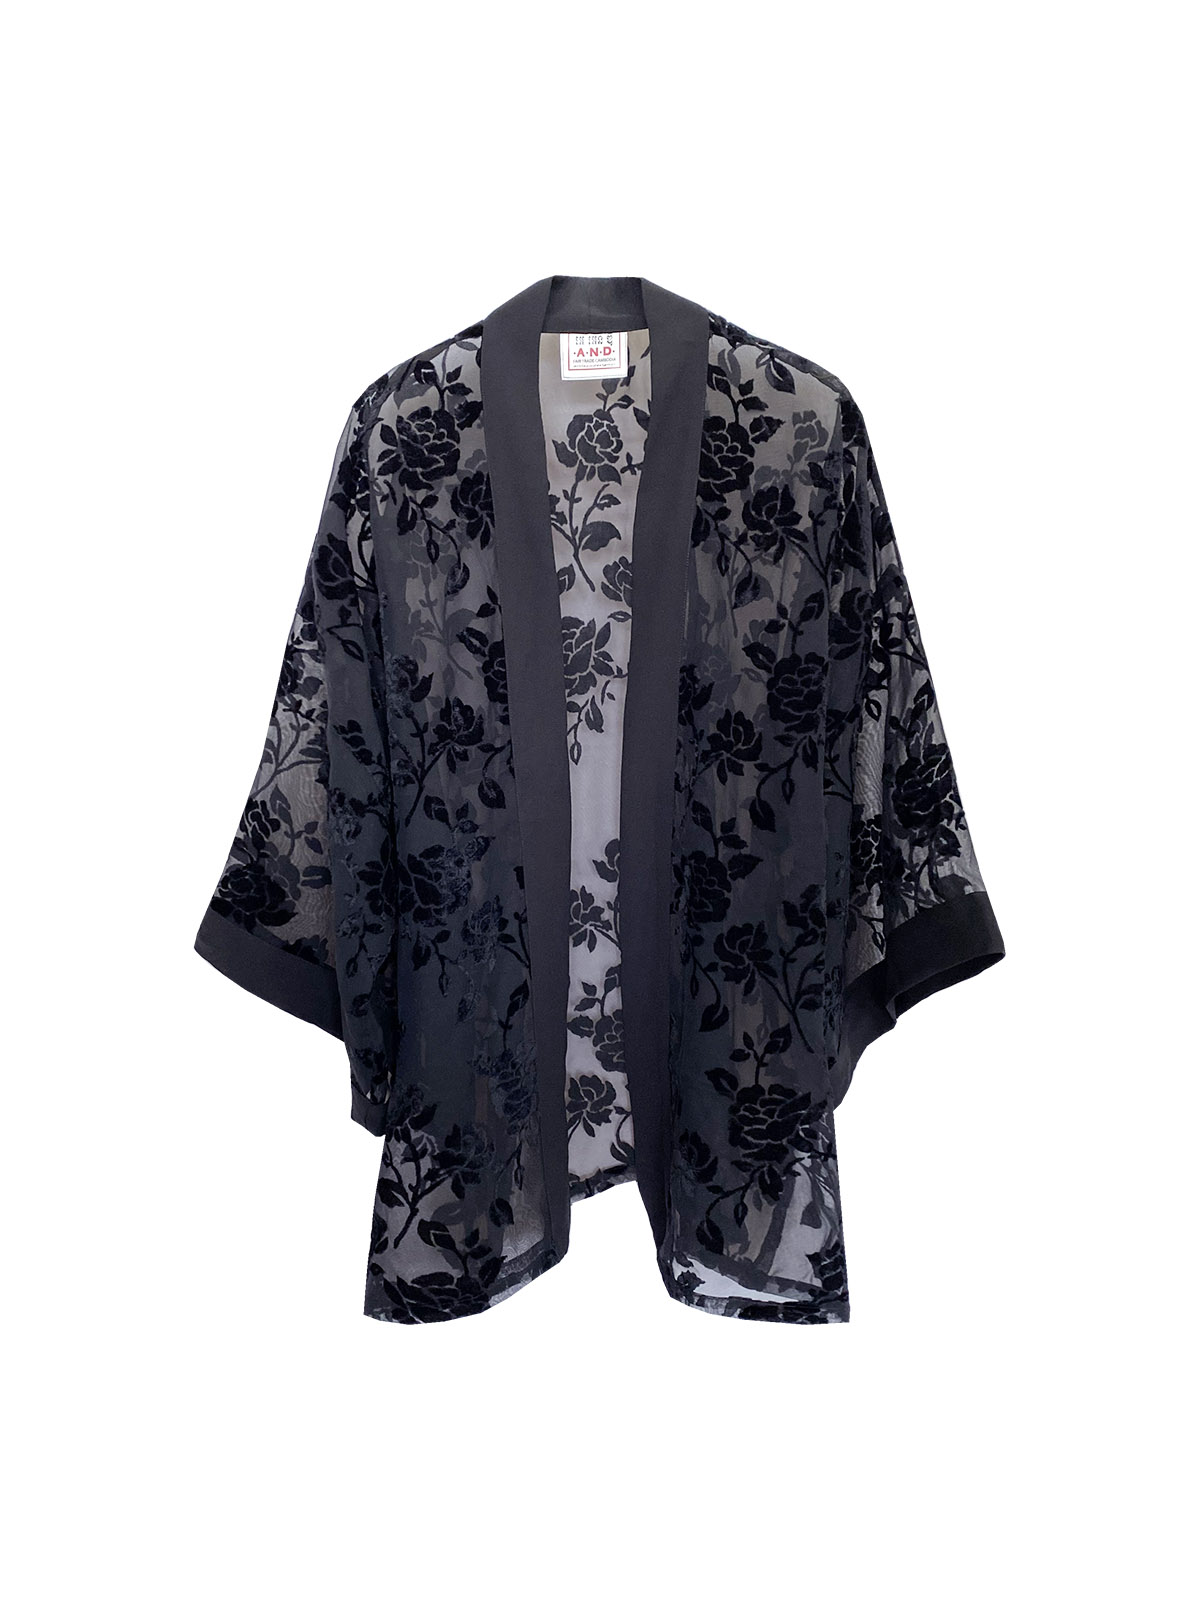 Chiffon Short Robe - Black Roses - (h)A.N.D. Fair Fashion - Mitzie Mee Shop